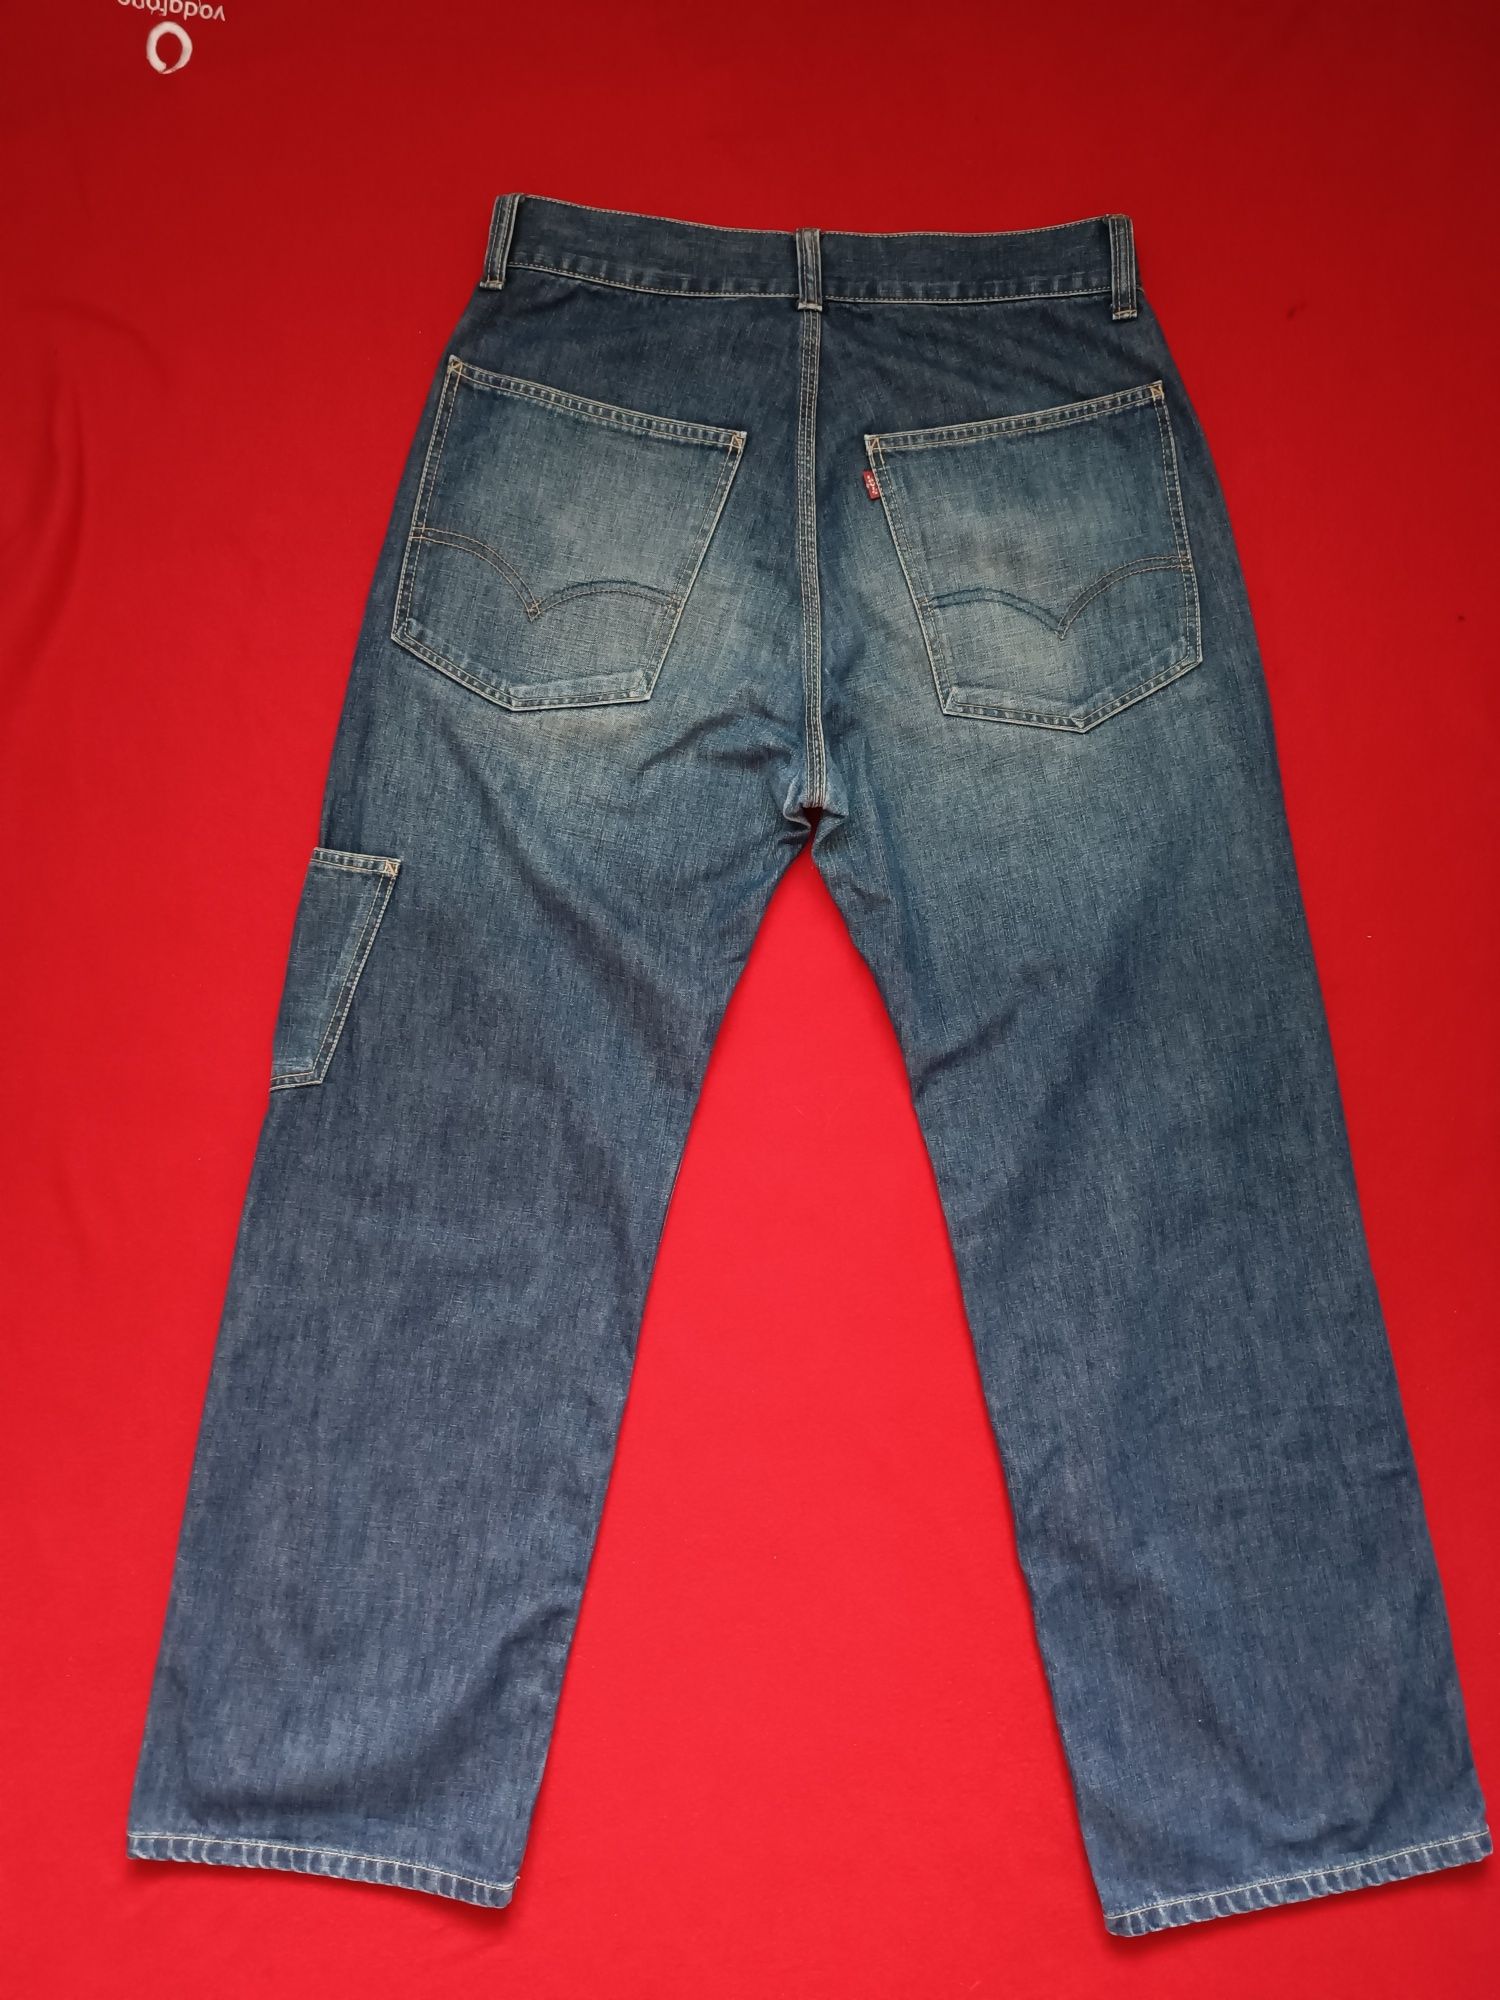 Продам оригинальные джинсы -трубы Levi's 34/32